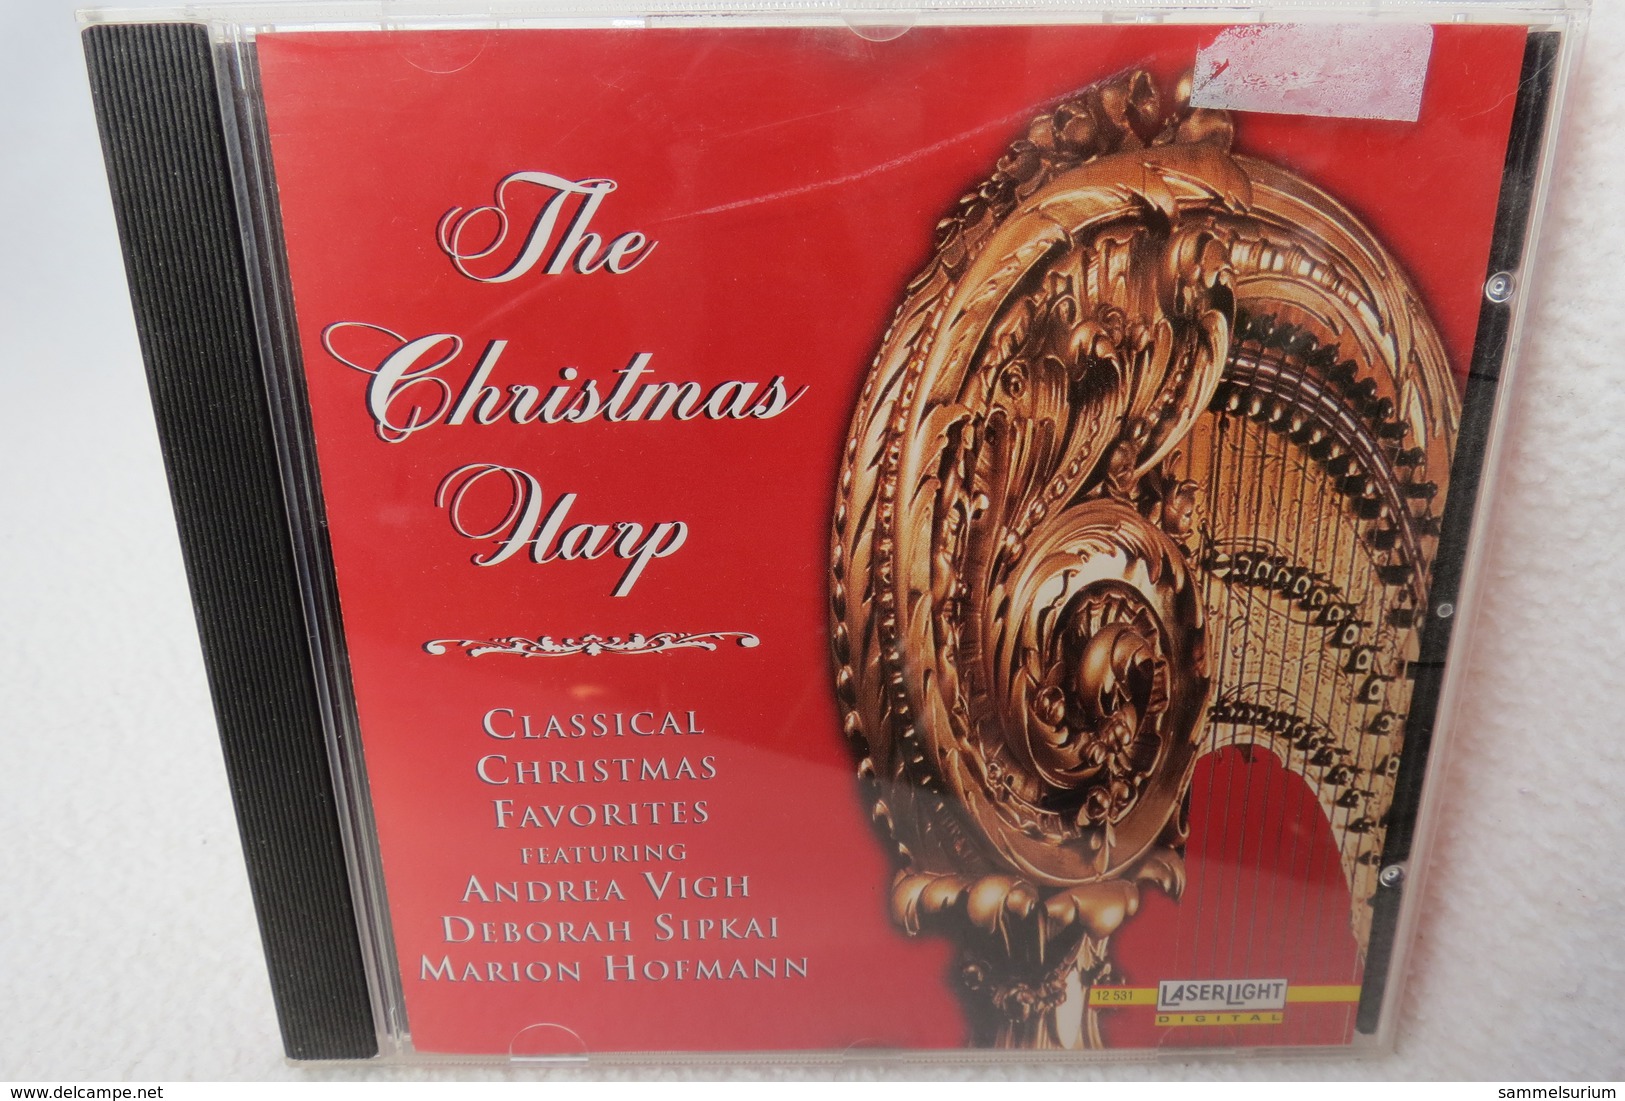 CD "The Christmas Harp" Classical Christmas Favorites - Christmas Carols